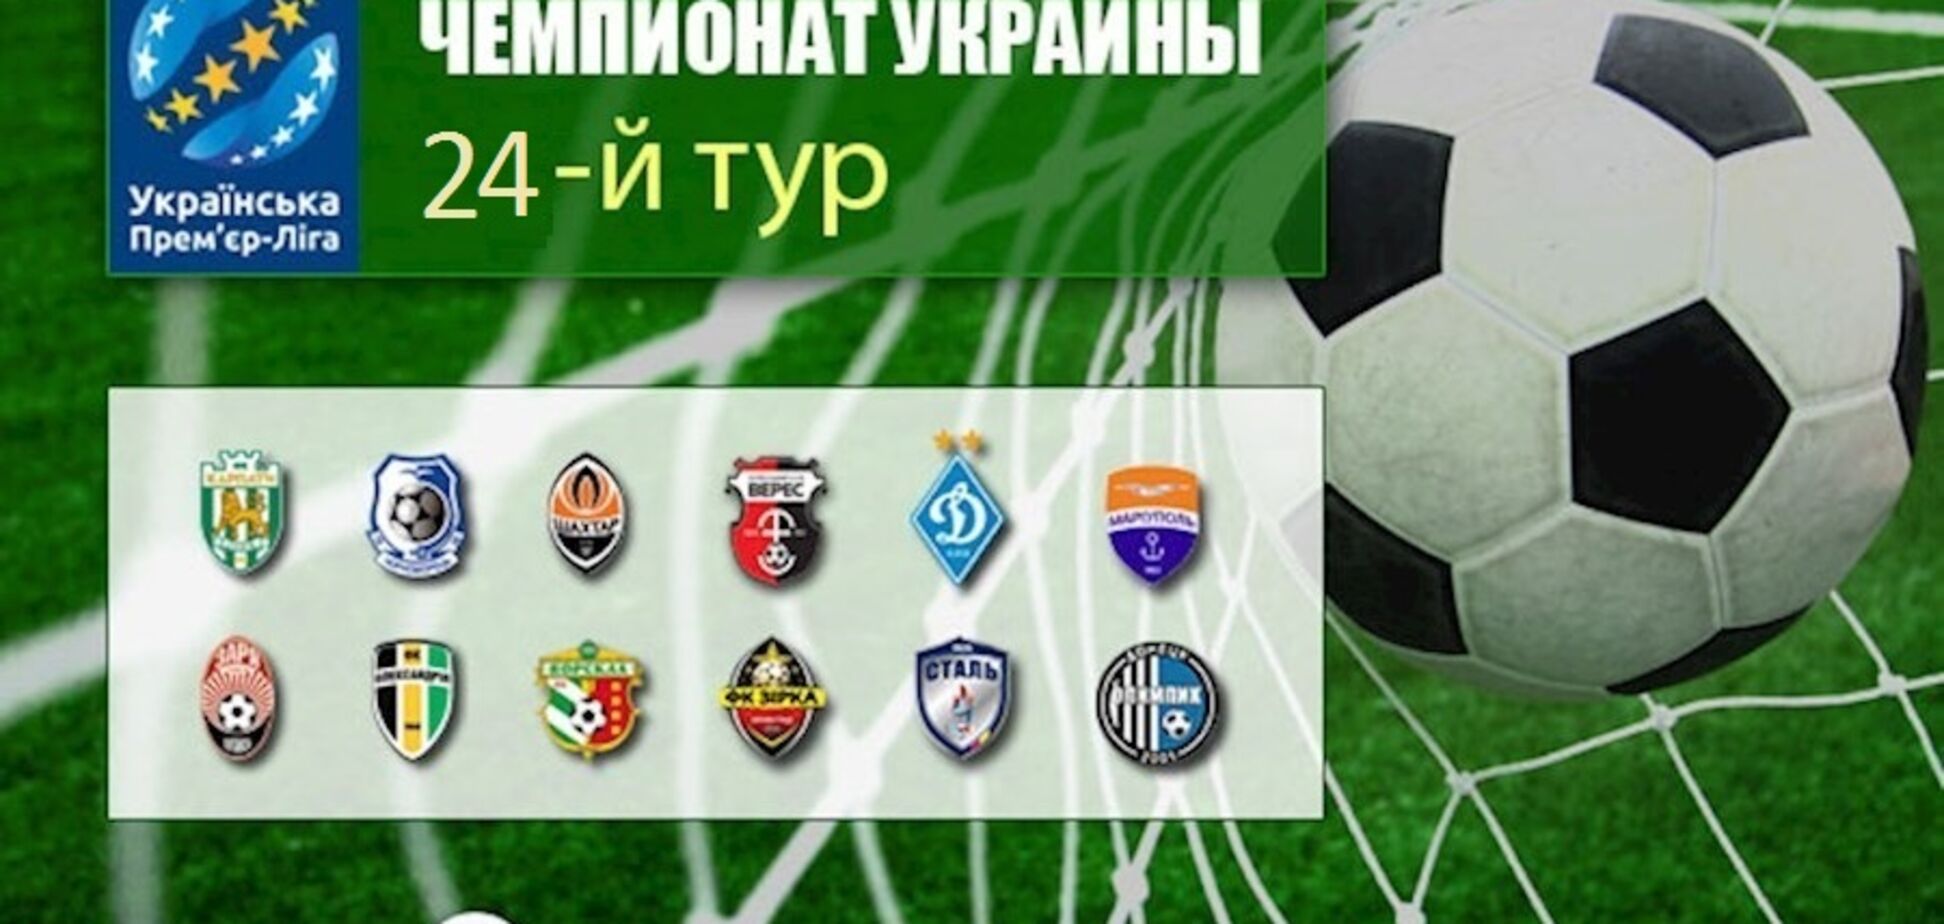 24-й тур чемпионата Украины по футболу: результаты, обзоры, турнирная таблица